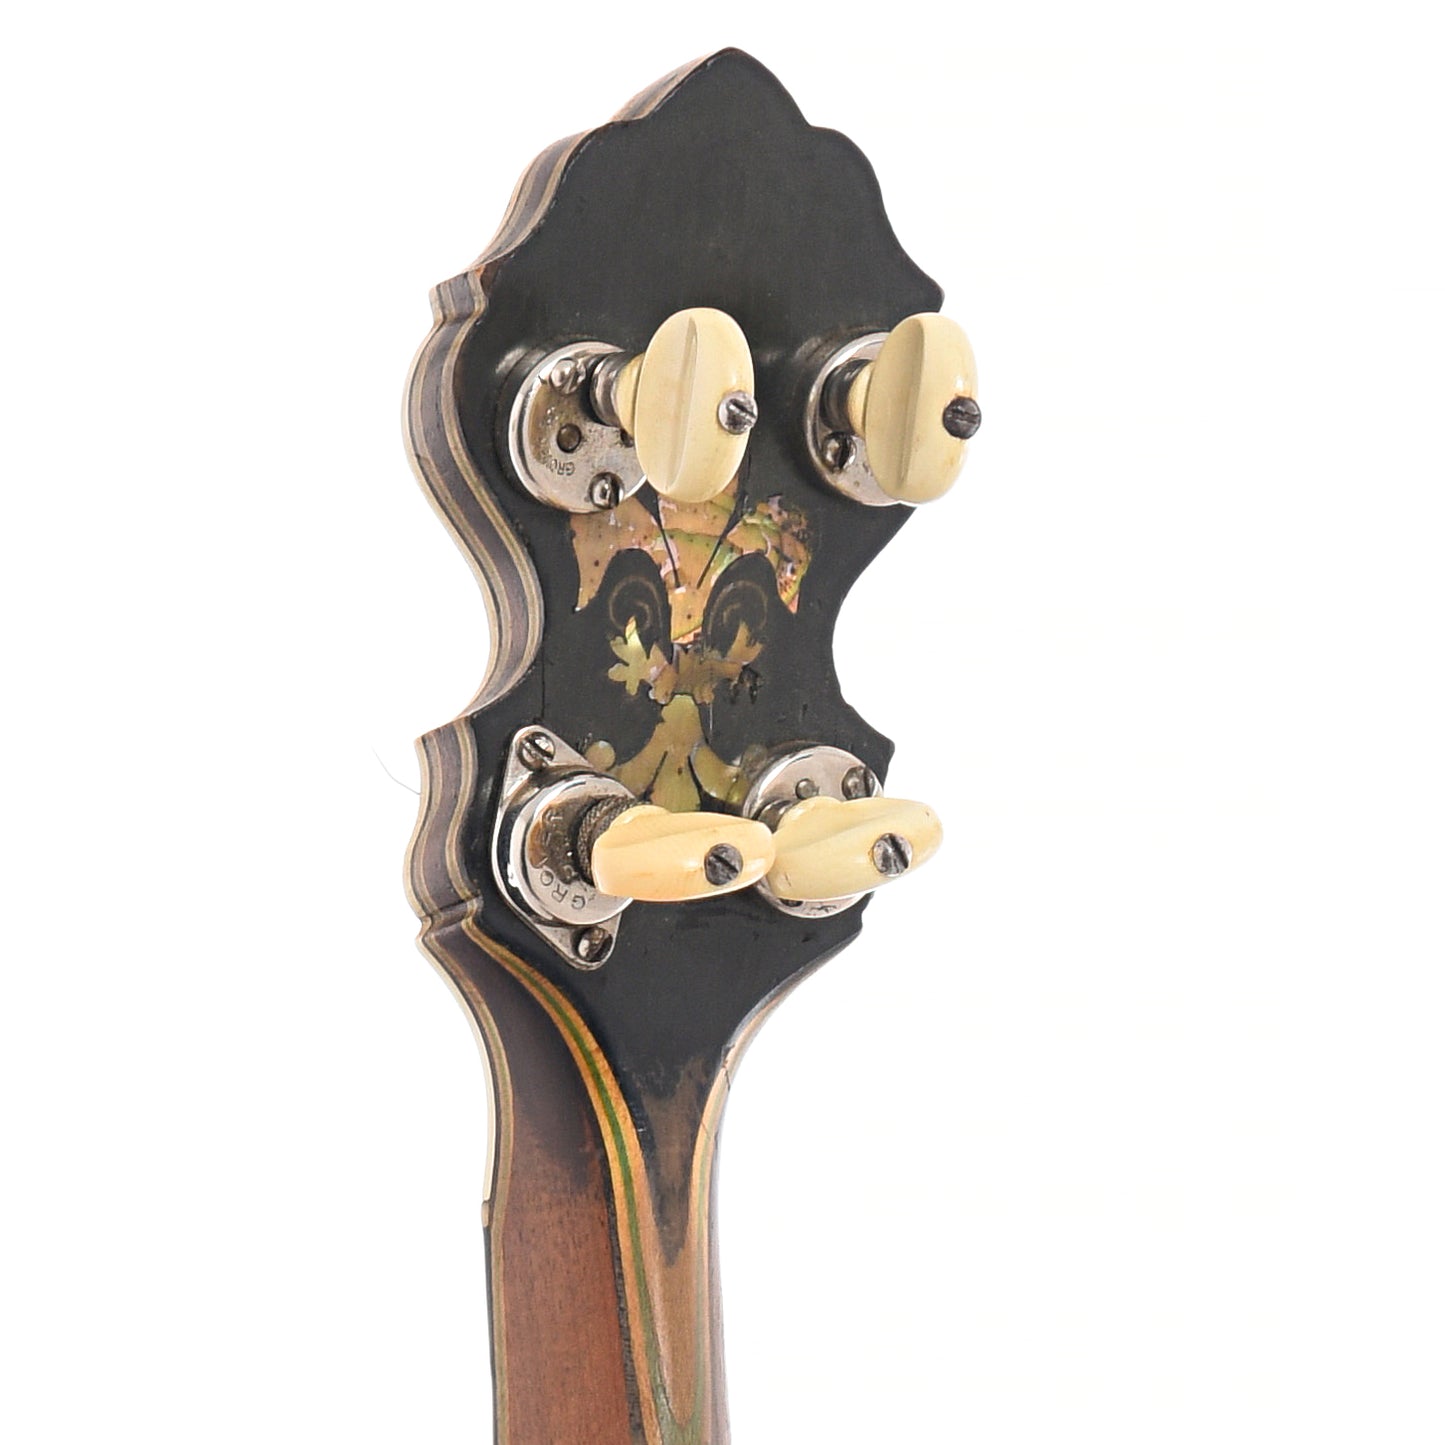 Tuners of Orpheum No.3 Special Tenor Banjo (c.1919)